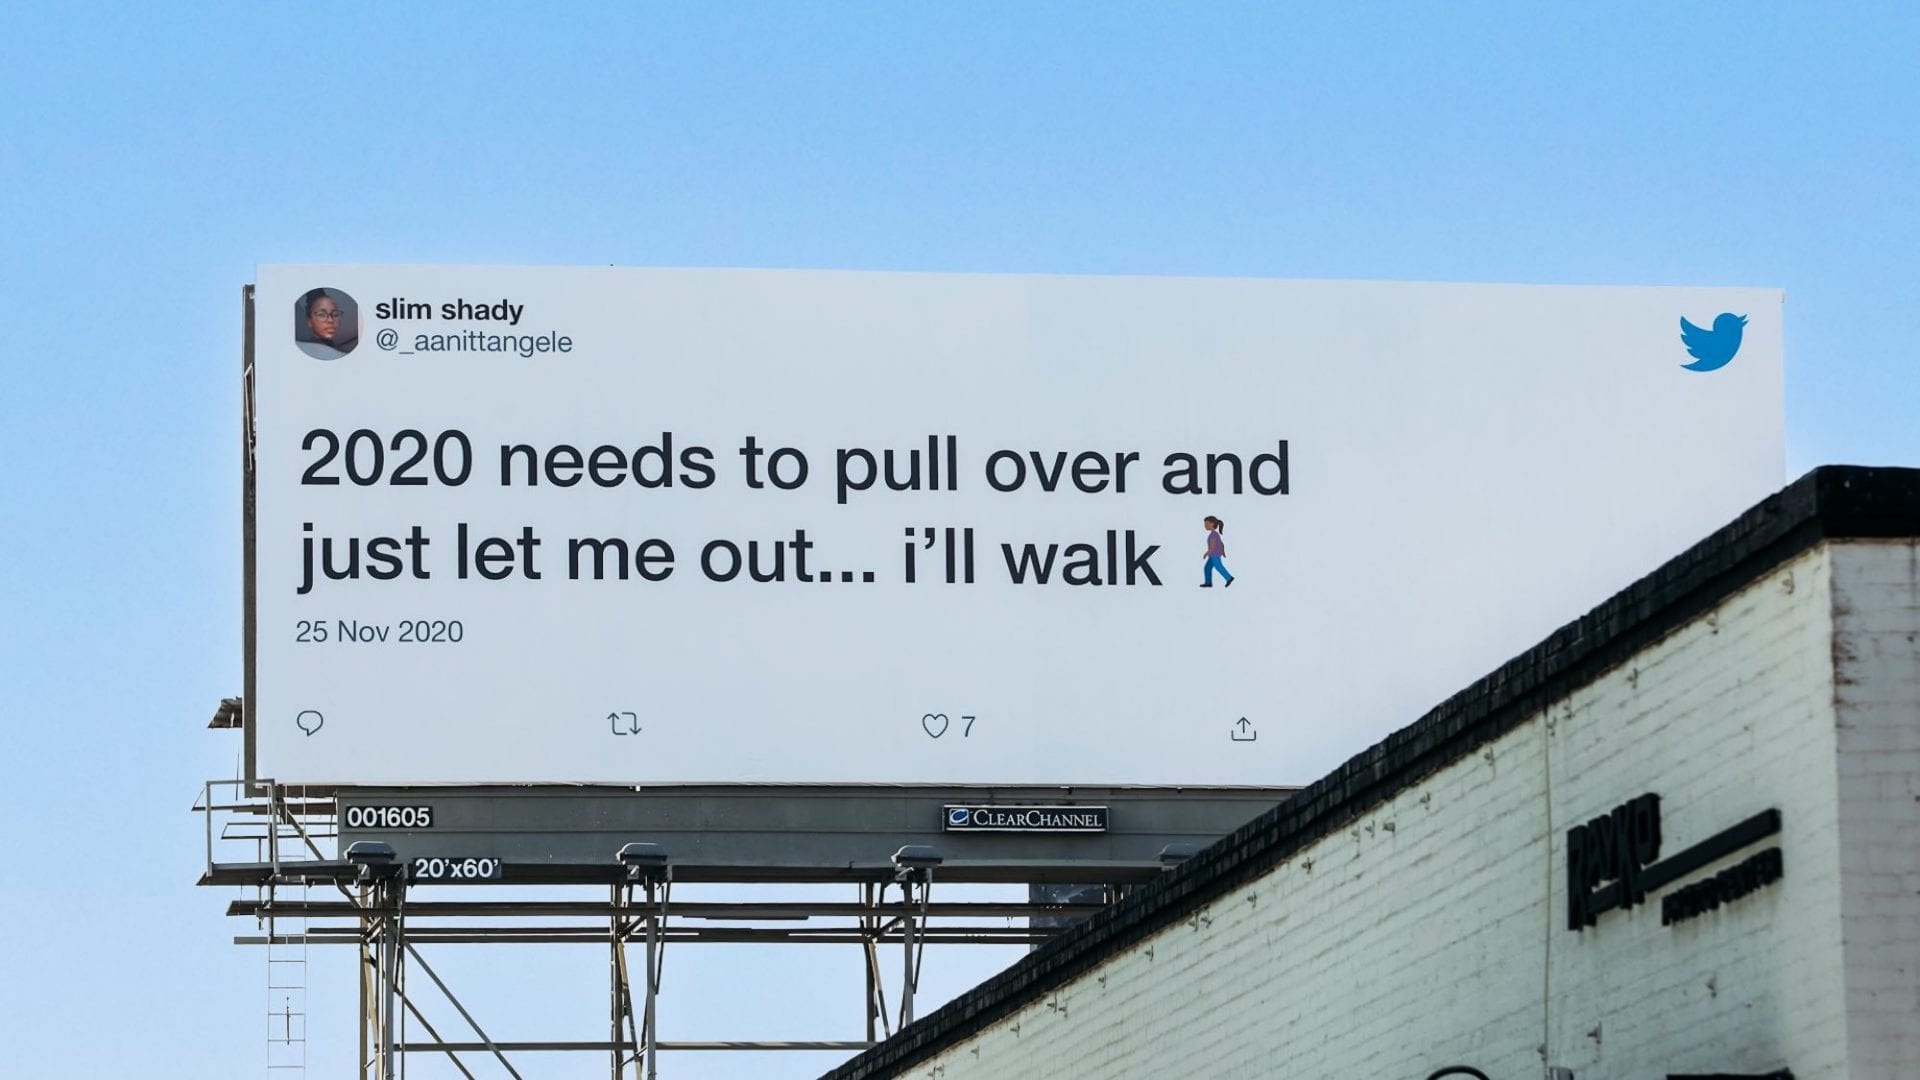 Twitter célèbre la fin de 2020 en affichant dans la rue les tweets des internautes